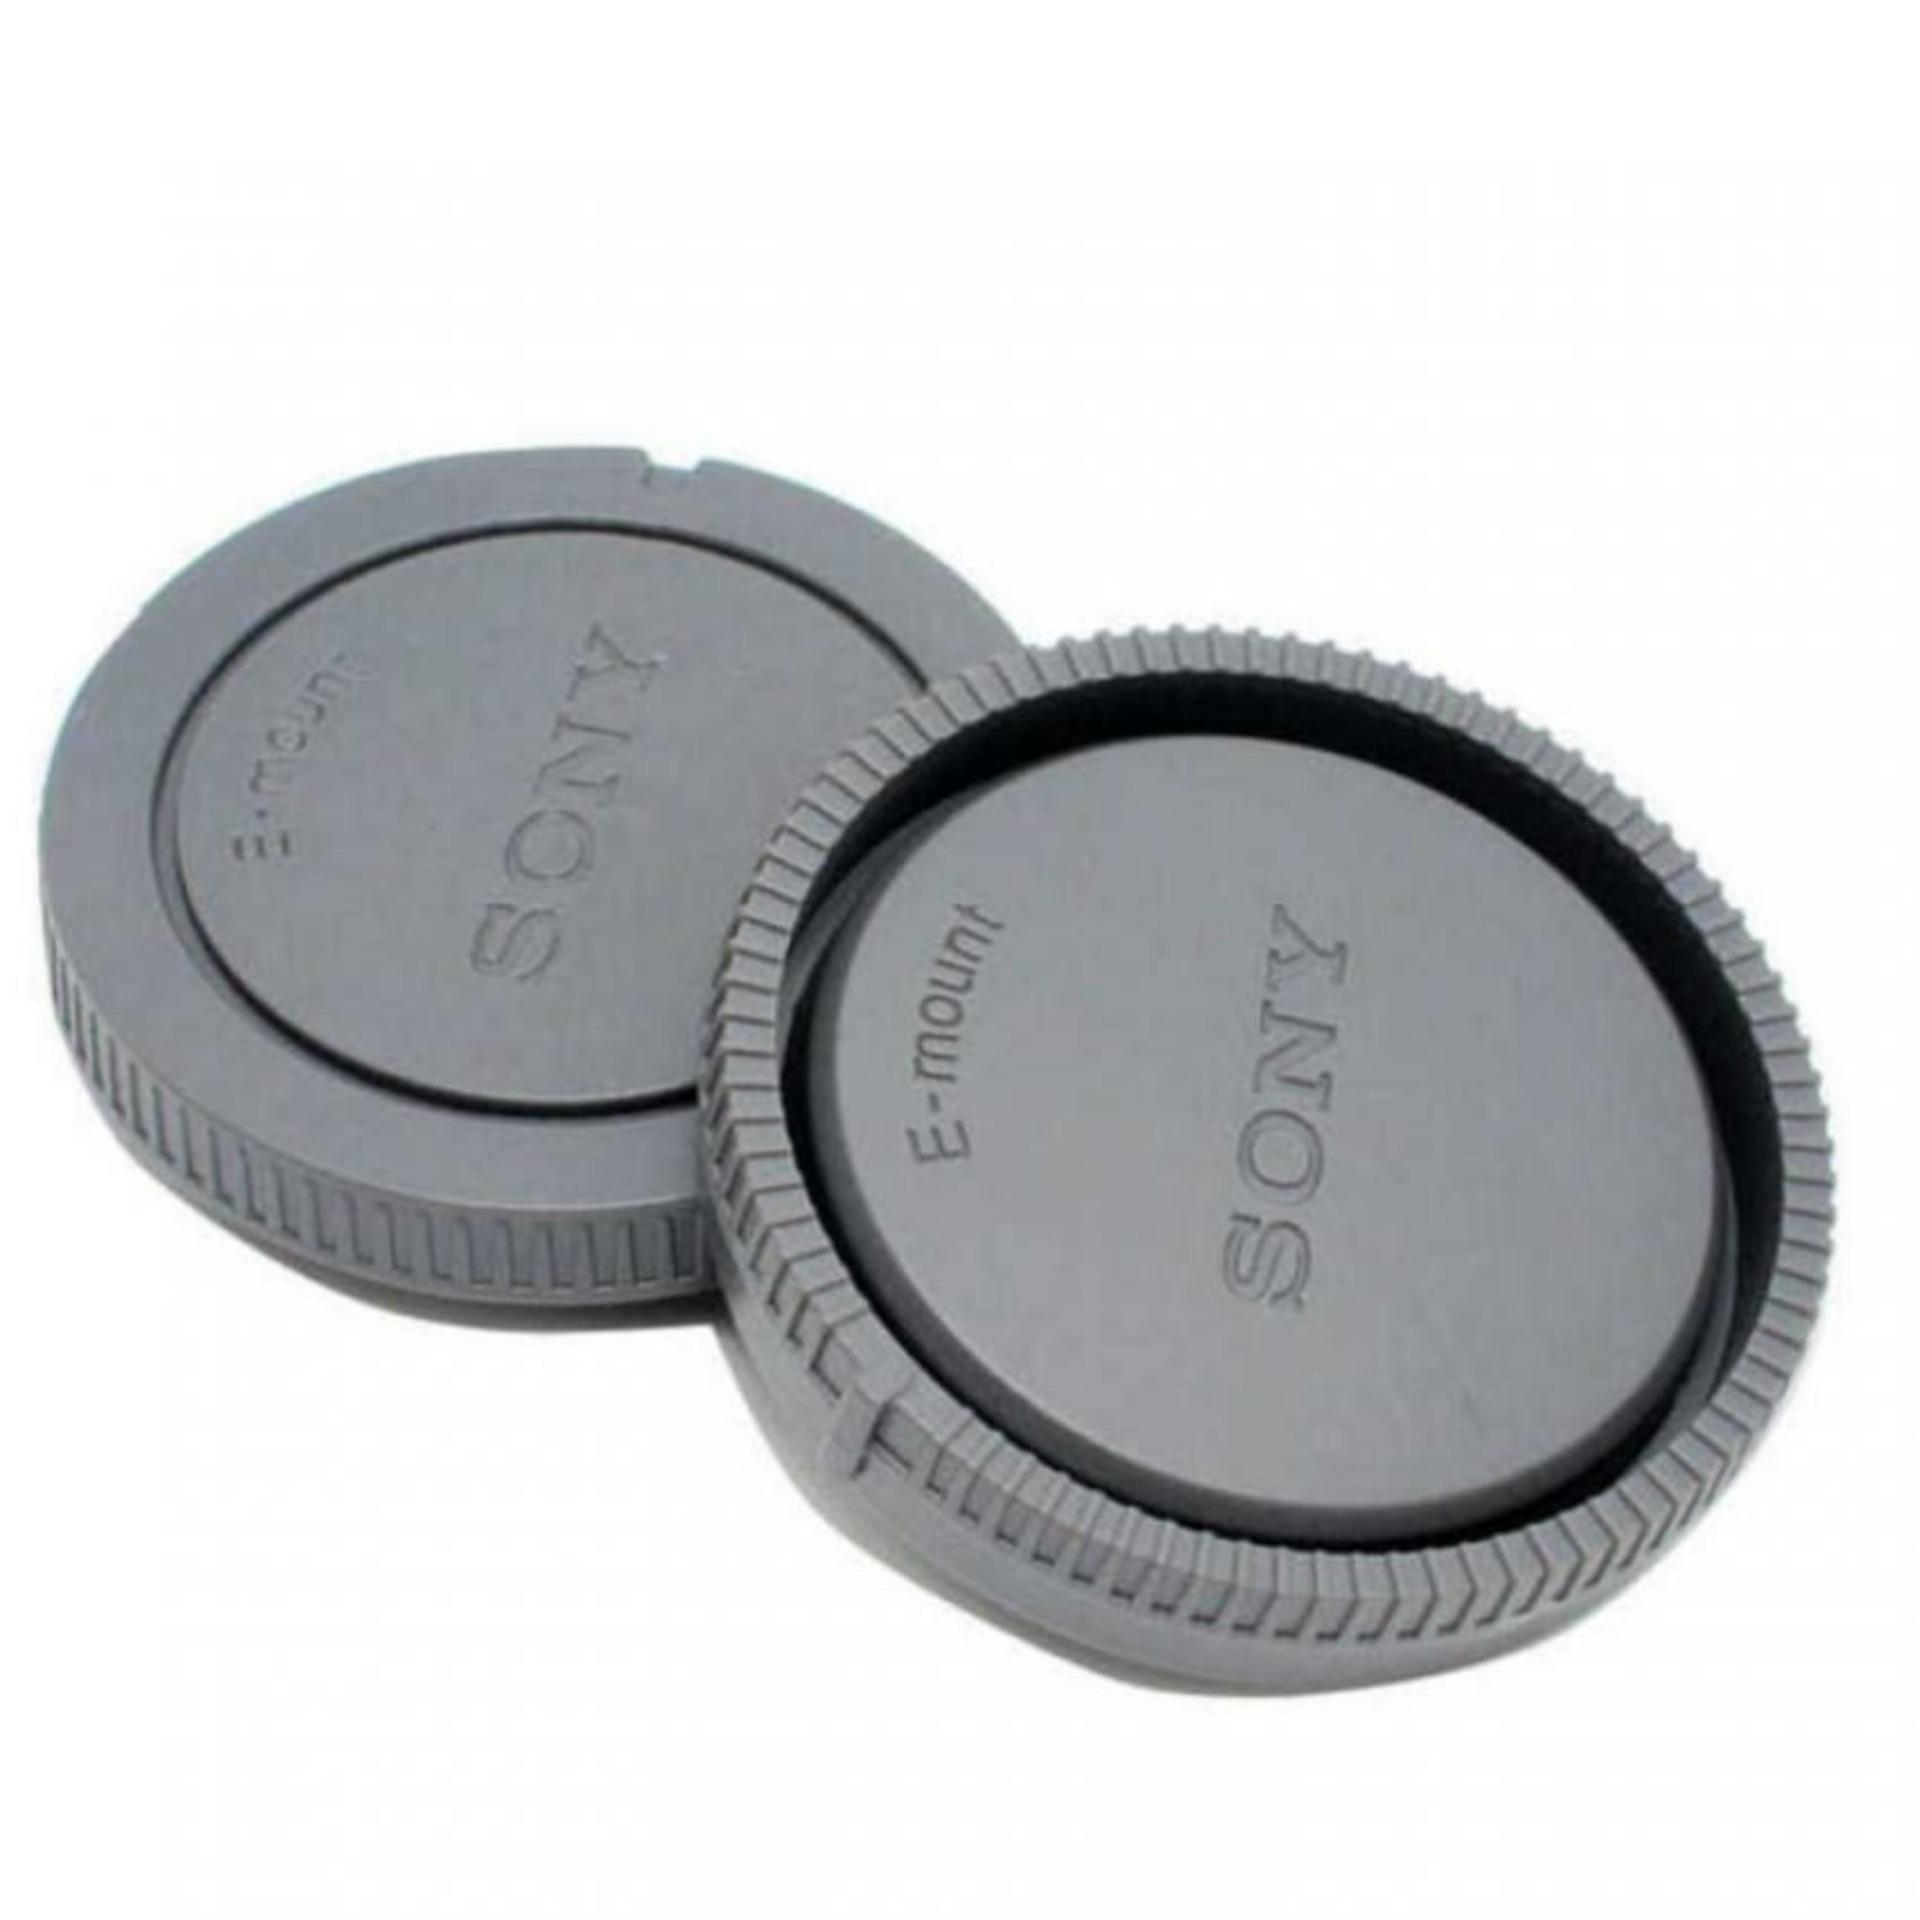 Bộ cap body và cap lens dành cho máy ảnh Sony E-mount (Xám)